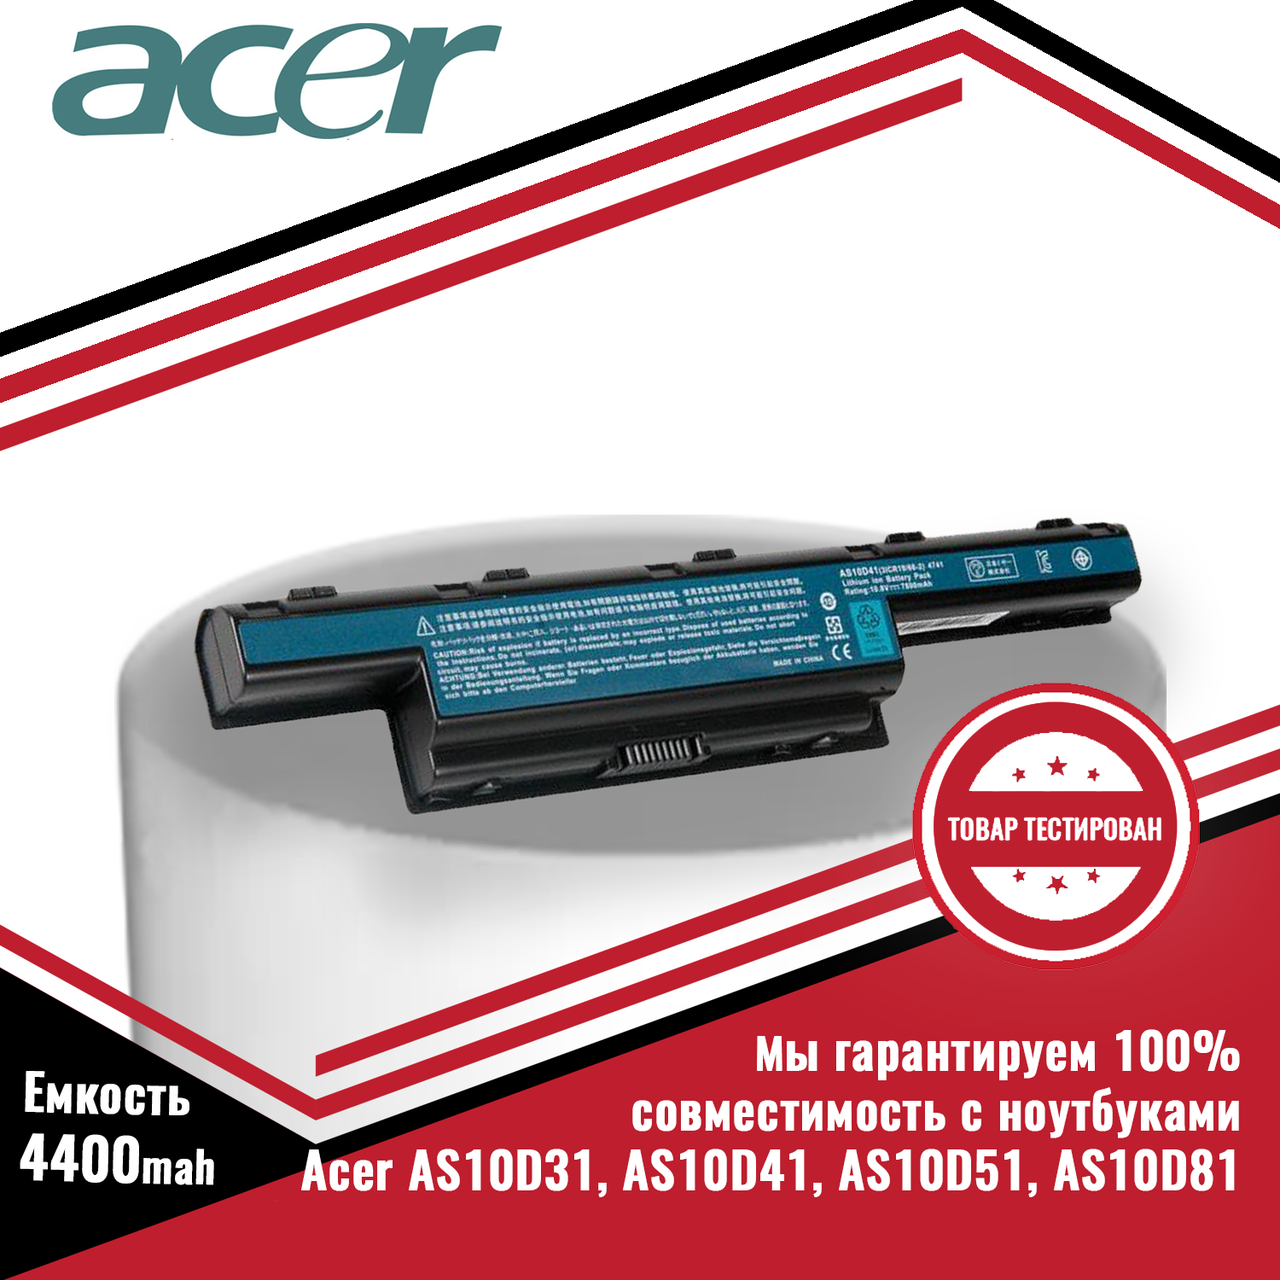 Оригинальный аккумулятор (батарея) для ноутбуков Acer p/n AS10D31, AS10D41, AS10D51, AS10D81 11.1V 4400mAh